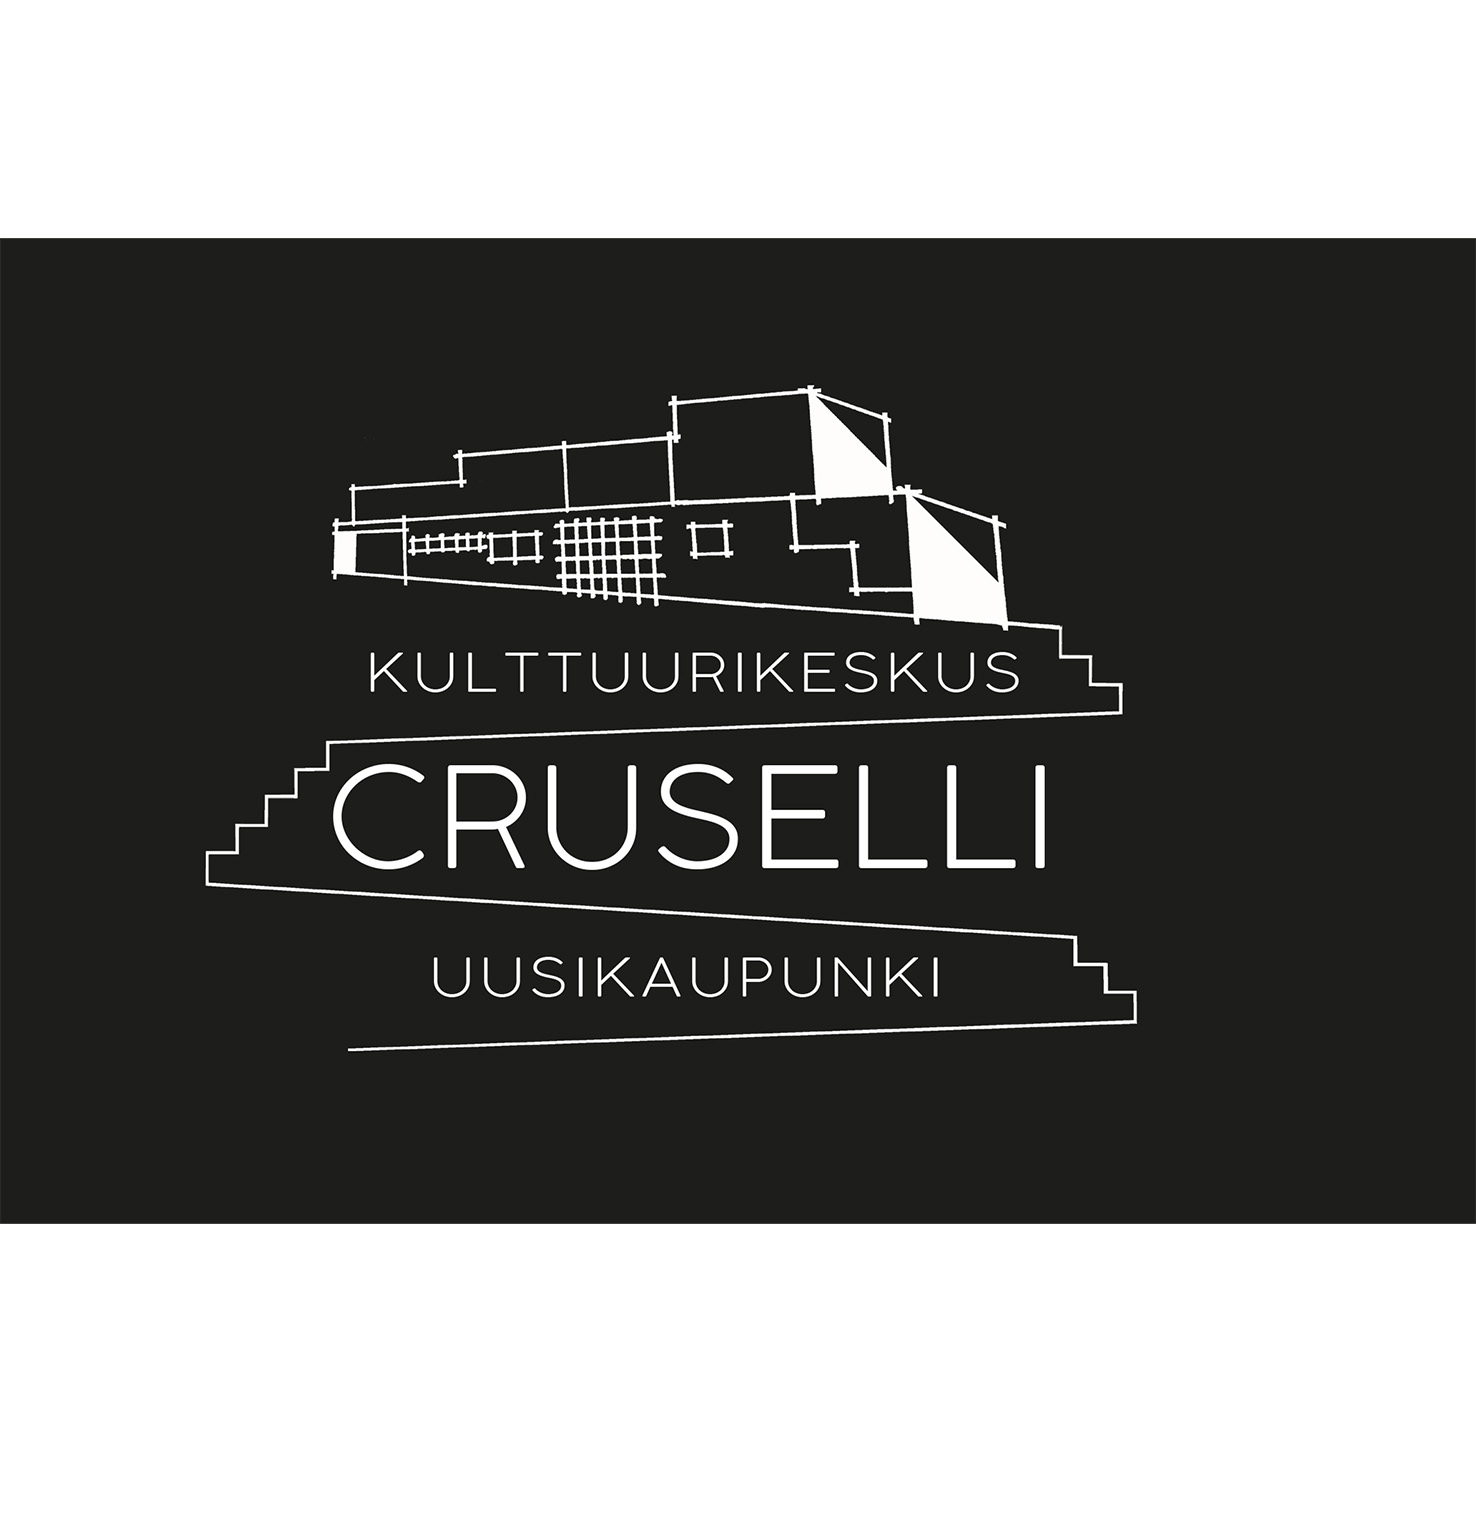 Kuvassa crusellin logo, viivapiirros kulttuurikeskuksesta.